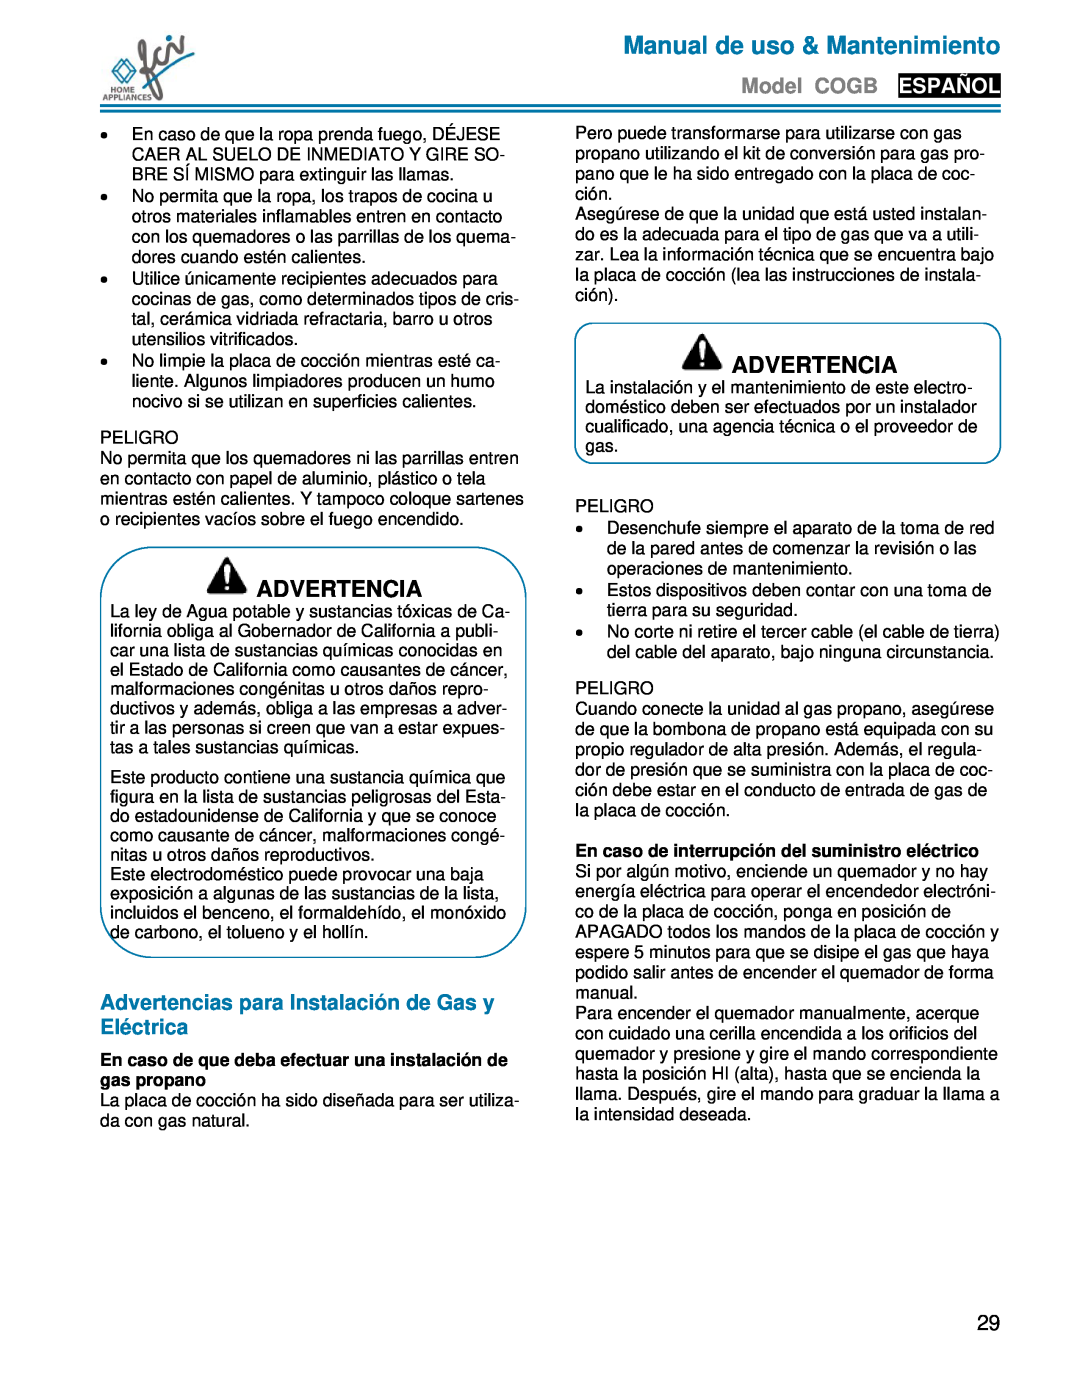 FCI Home Appliances COGB33062 manual Advertencias para Instalación de Gas y Eléctrica, Manual de uso & Mantenimiento 